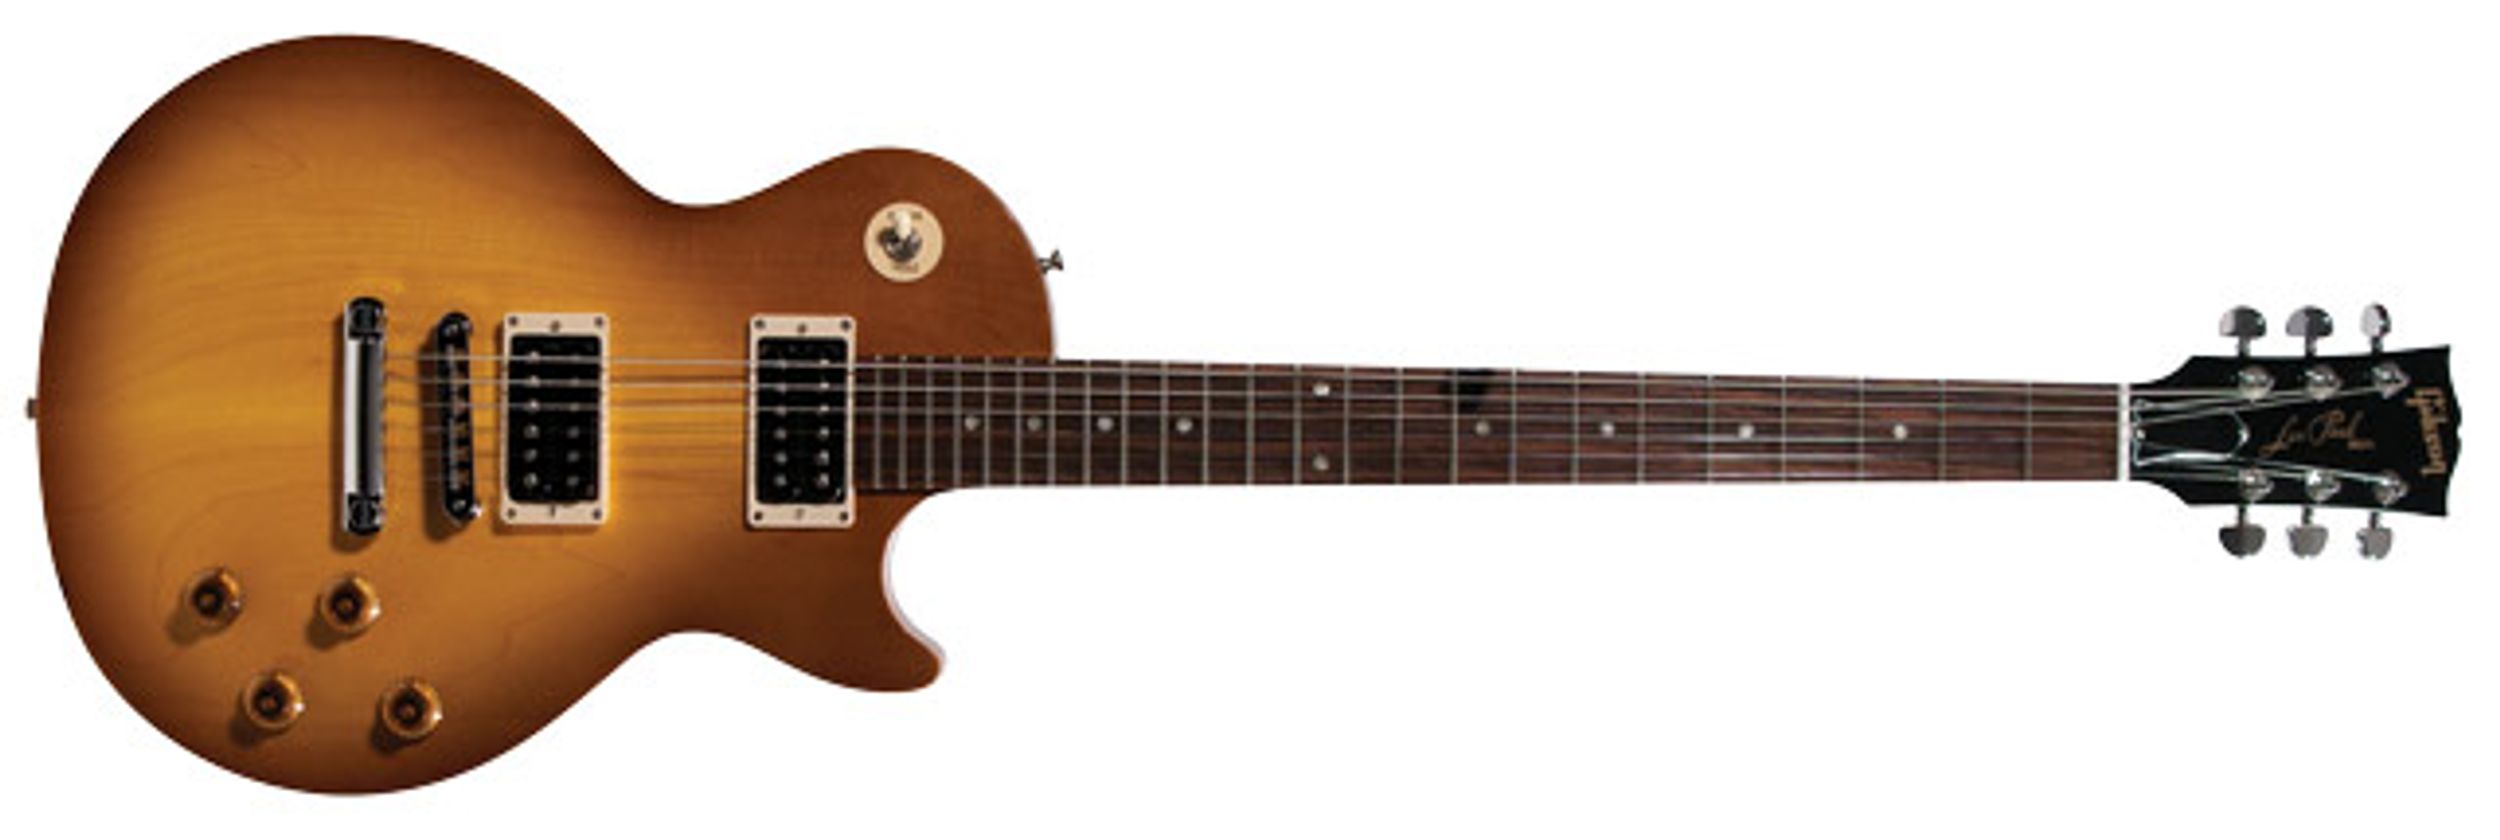 Gibson Les Paul Studio Baritone Electric Guitar Review